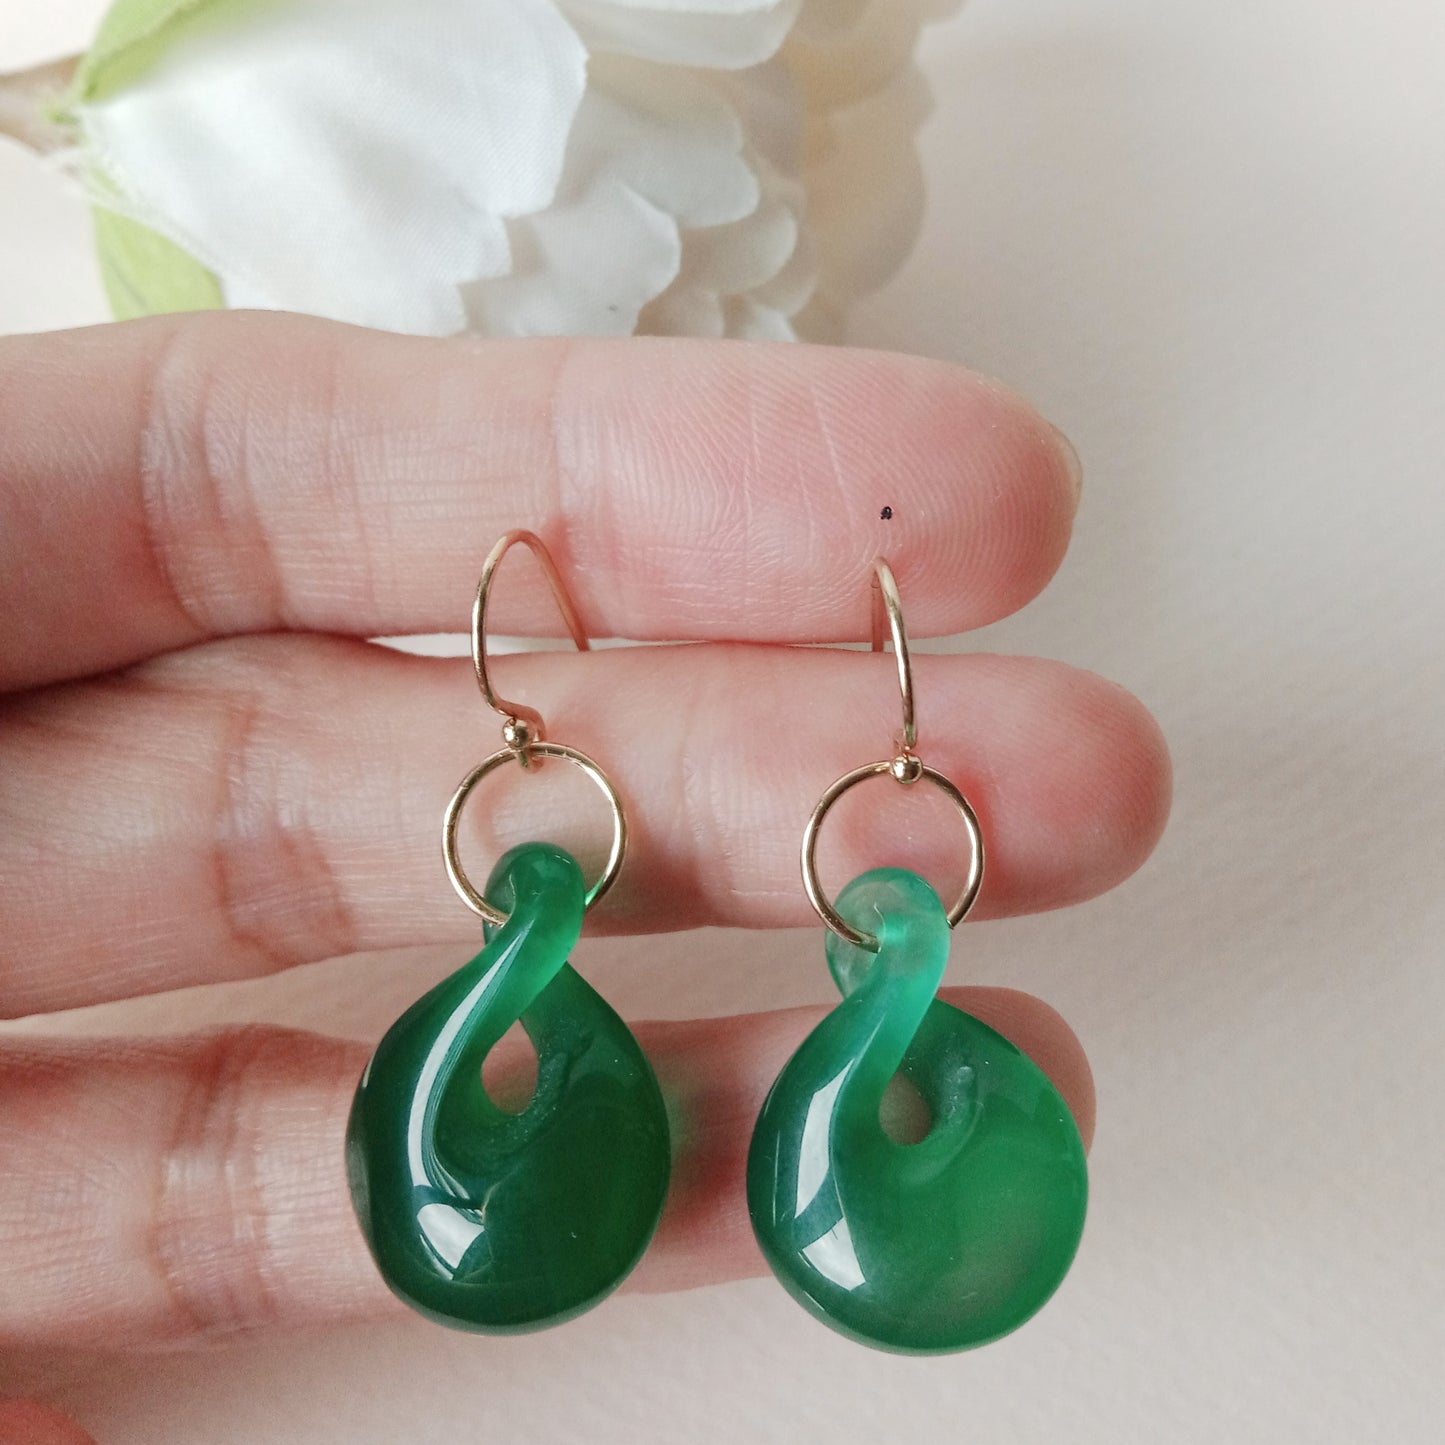 Green onyx gold-filled hook earrings